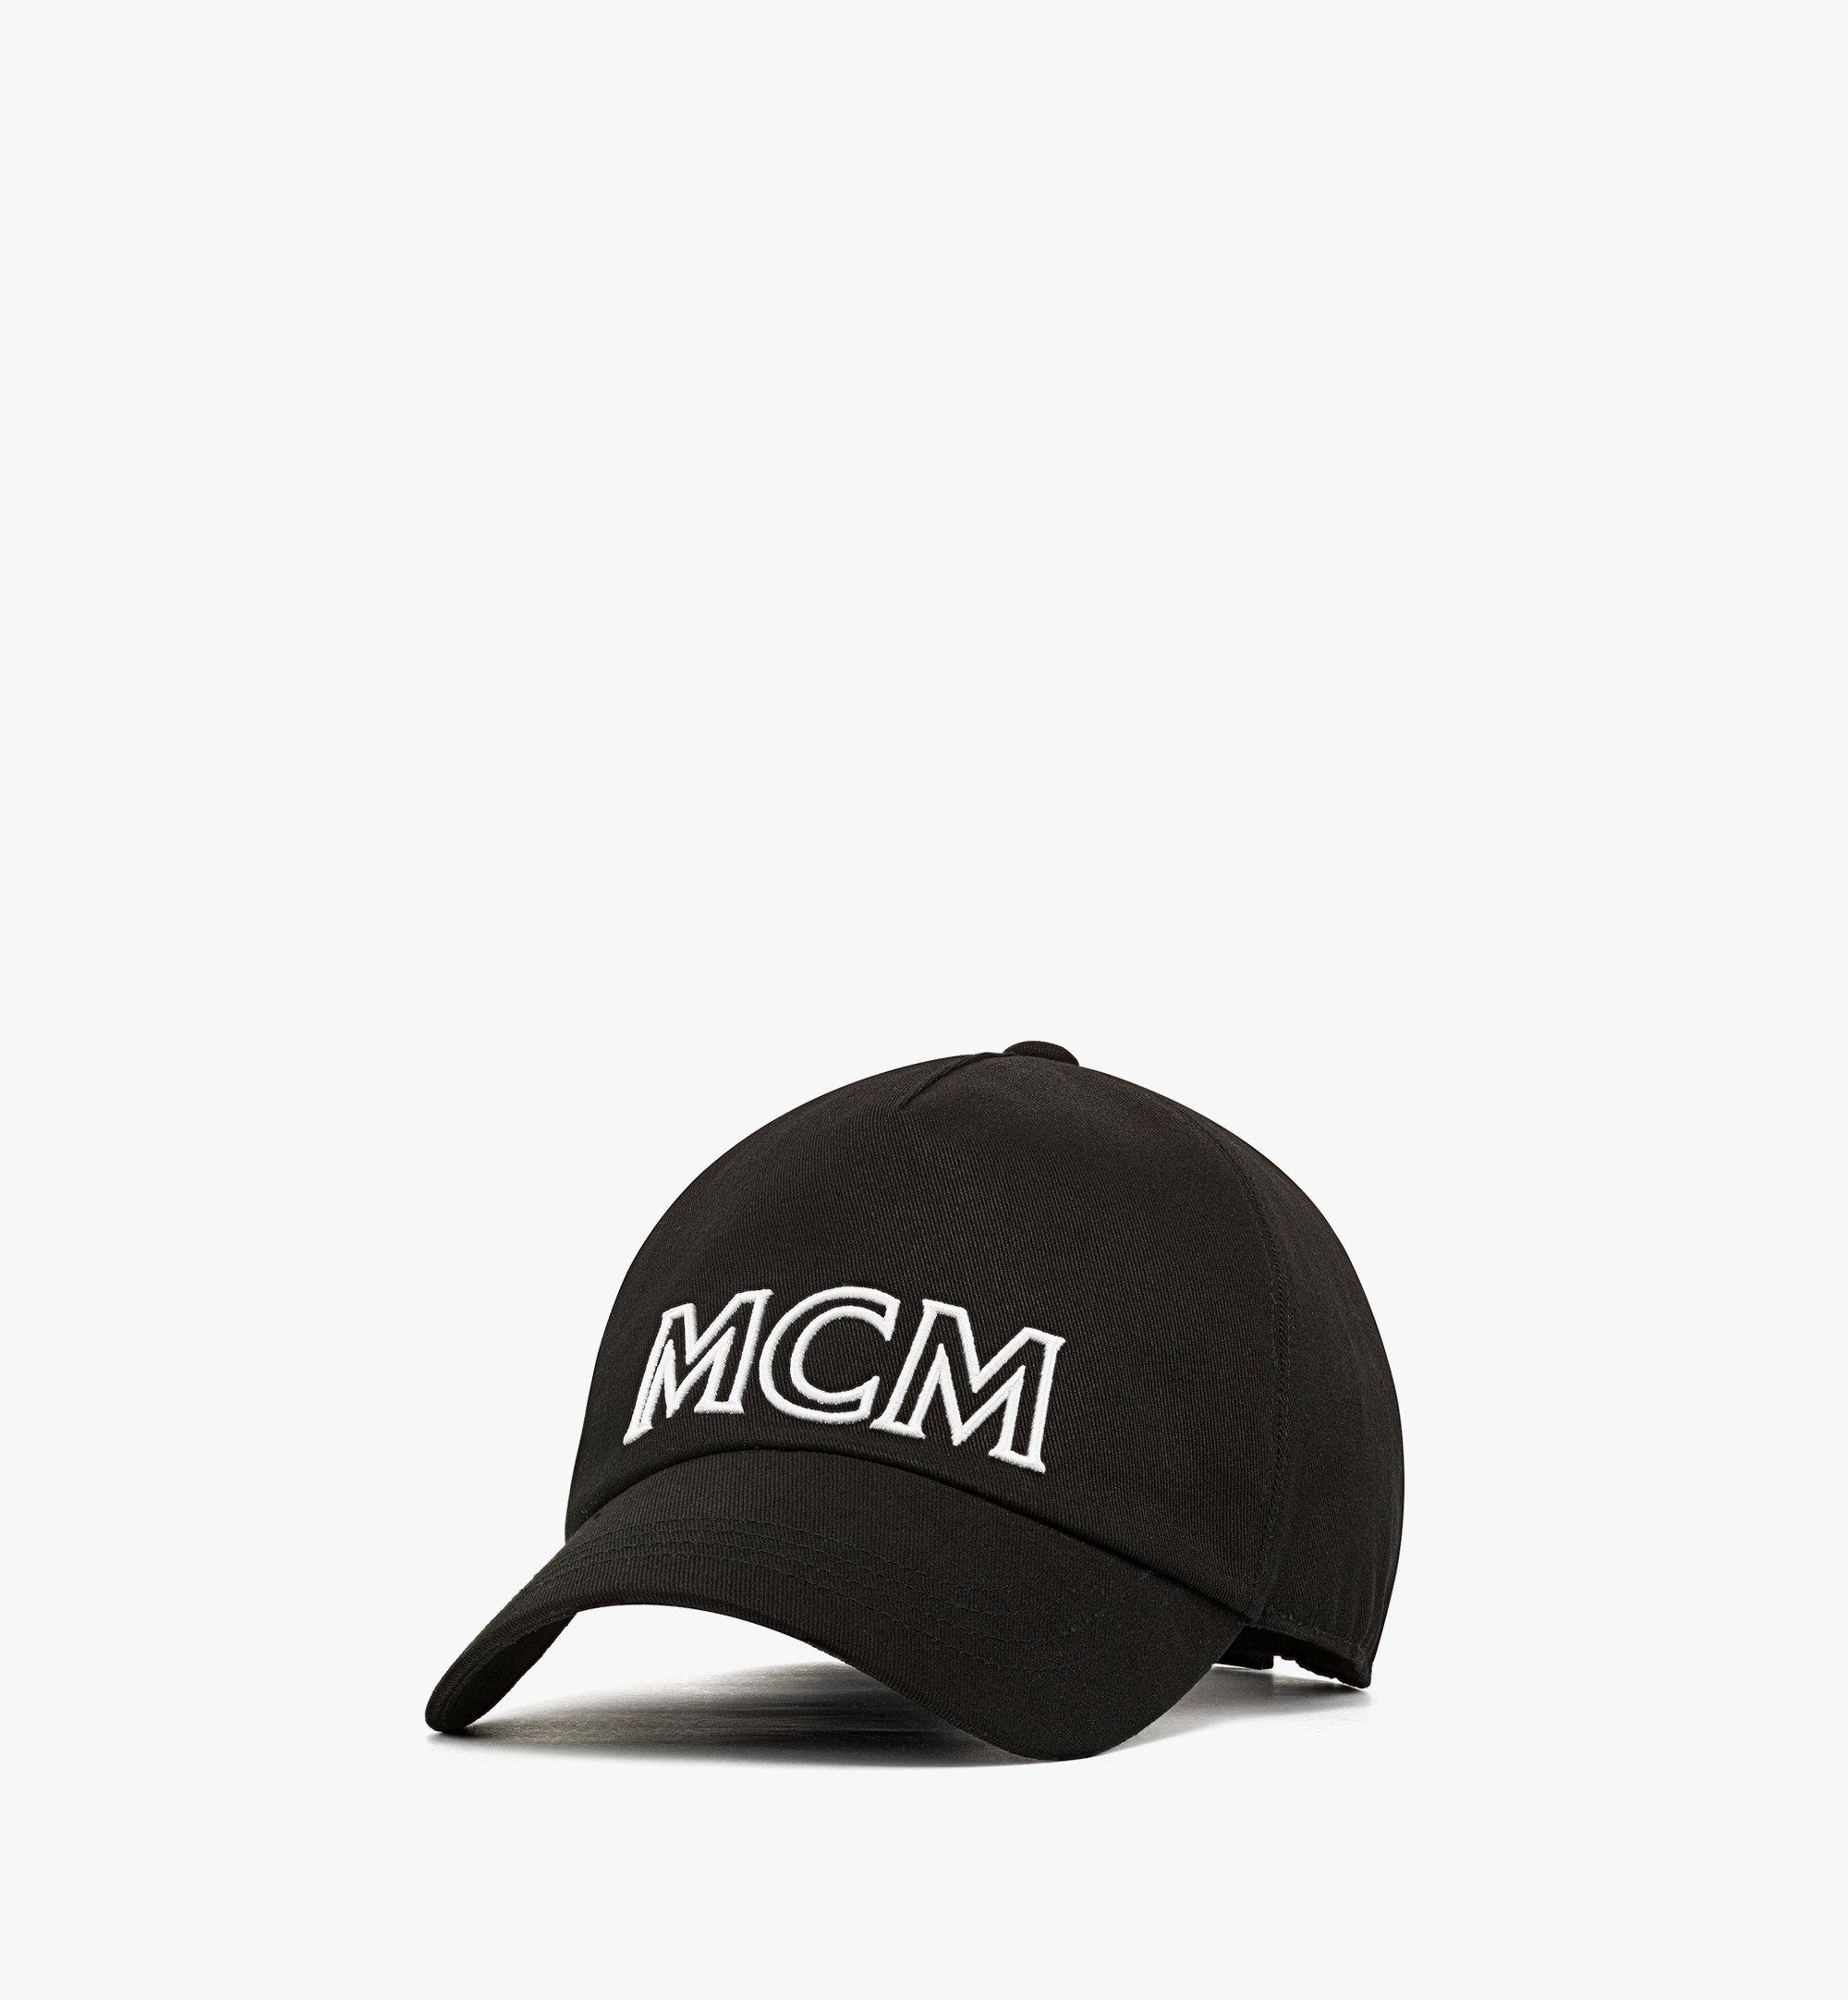 MCM(エムシーエム) ヴィセトス クラシック キャップ メンズ 帽子 キャップ